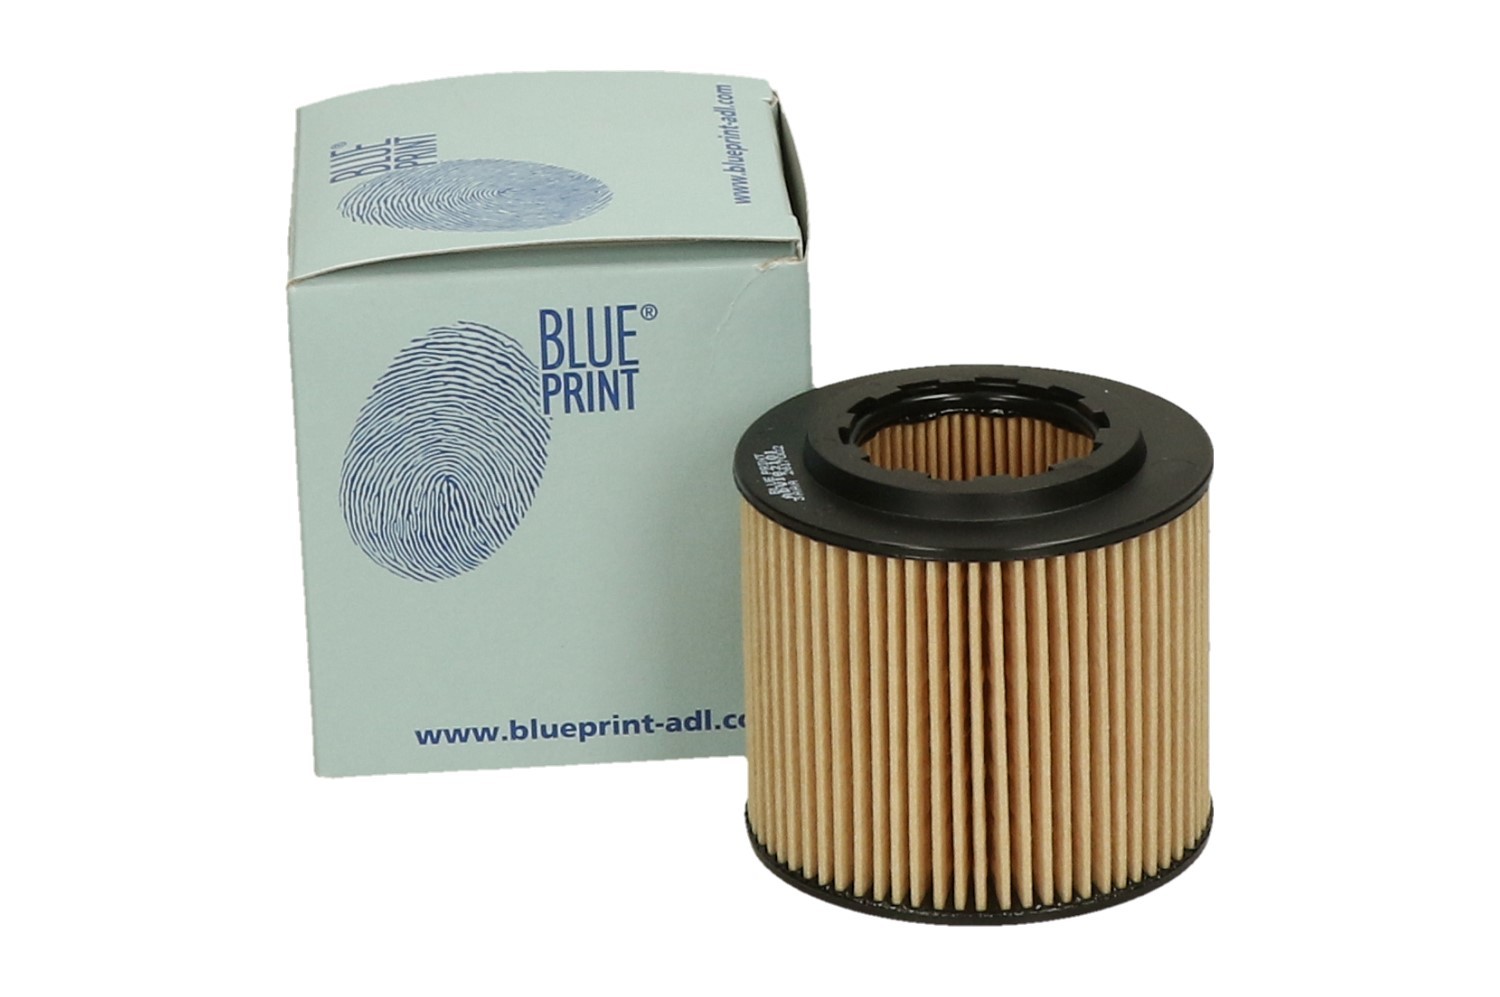 Шкода фабия фильтр купить. Масляный фильтр Skoda Fabia 1.2. Blue Print фильтр масляный. Шкода Фабия 1/2 фильтр масляный Mann. Фильтр масляный Шкода Фабия 1.2 2013.